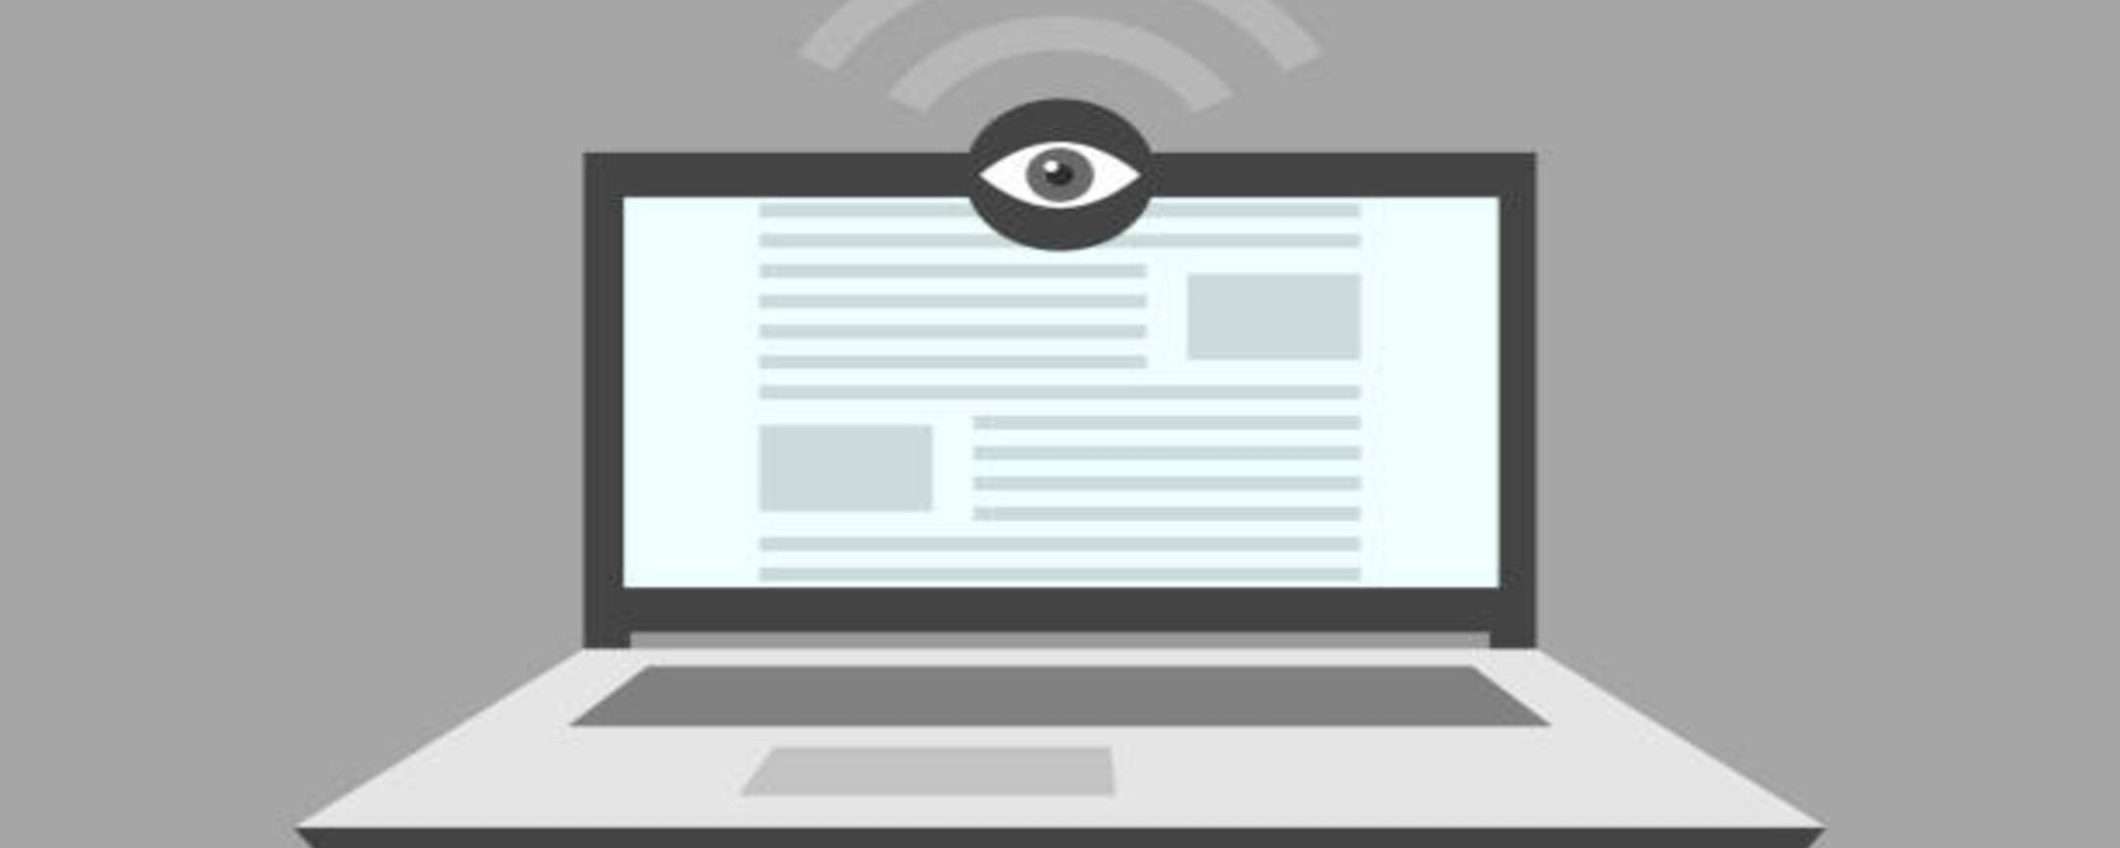 Webcam a prova di hacking: questo software tutela la privacy